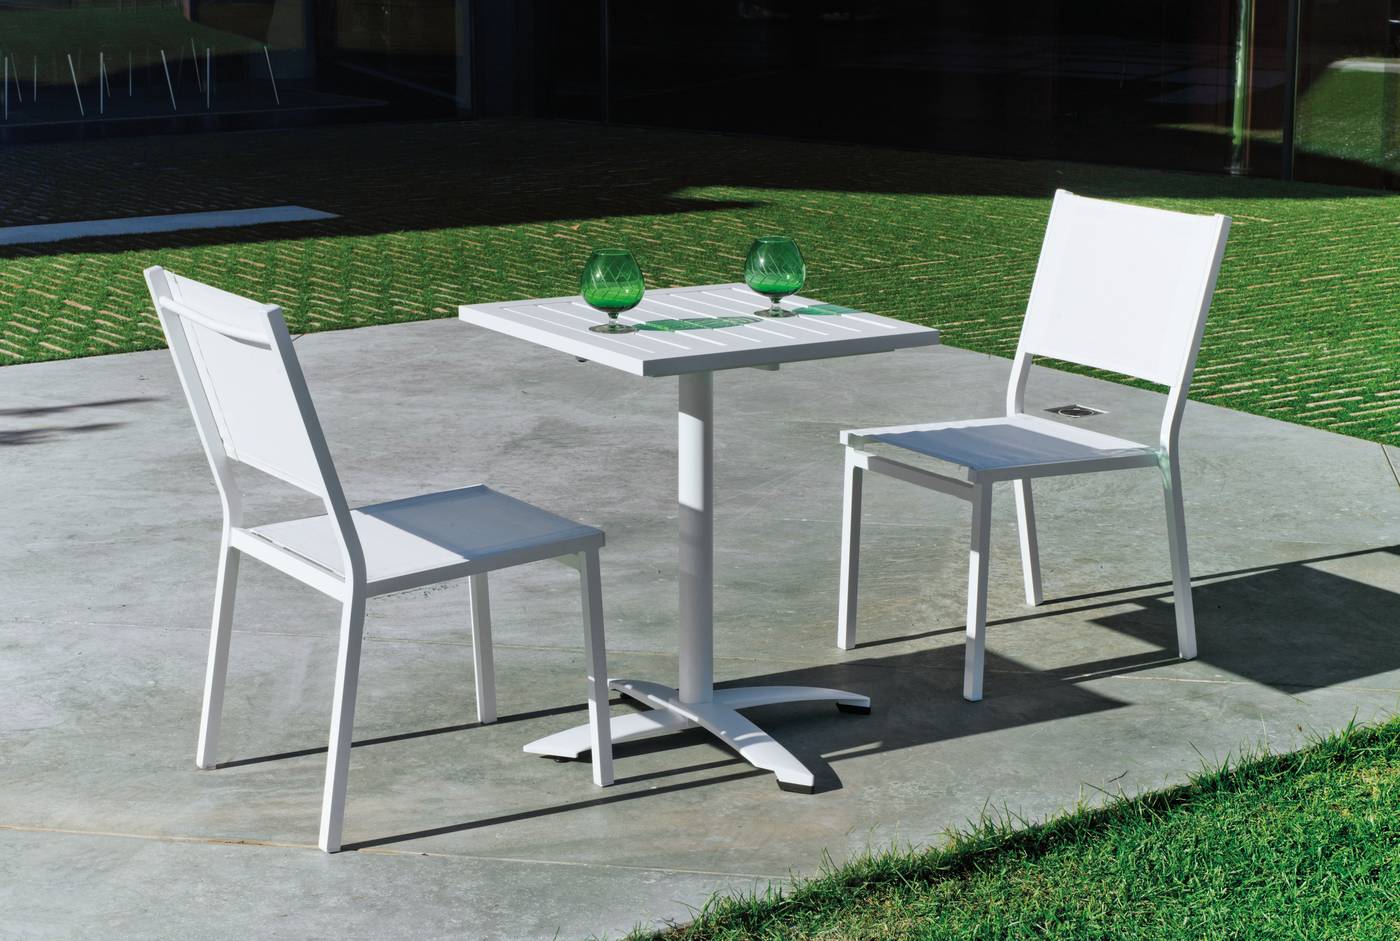 Mesa cuadrada 60 cm de aluminio,  con tablero lamas de aluminio + 2 sillas aluminio y textilen. Disponible en varios colores: blanco, plata y antracita.